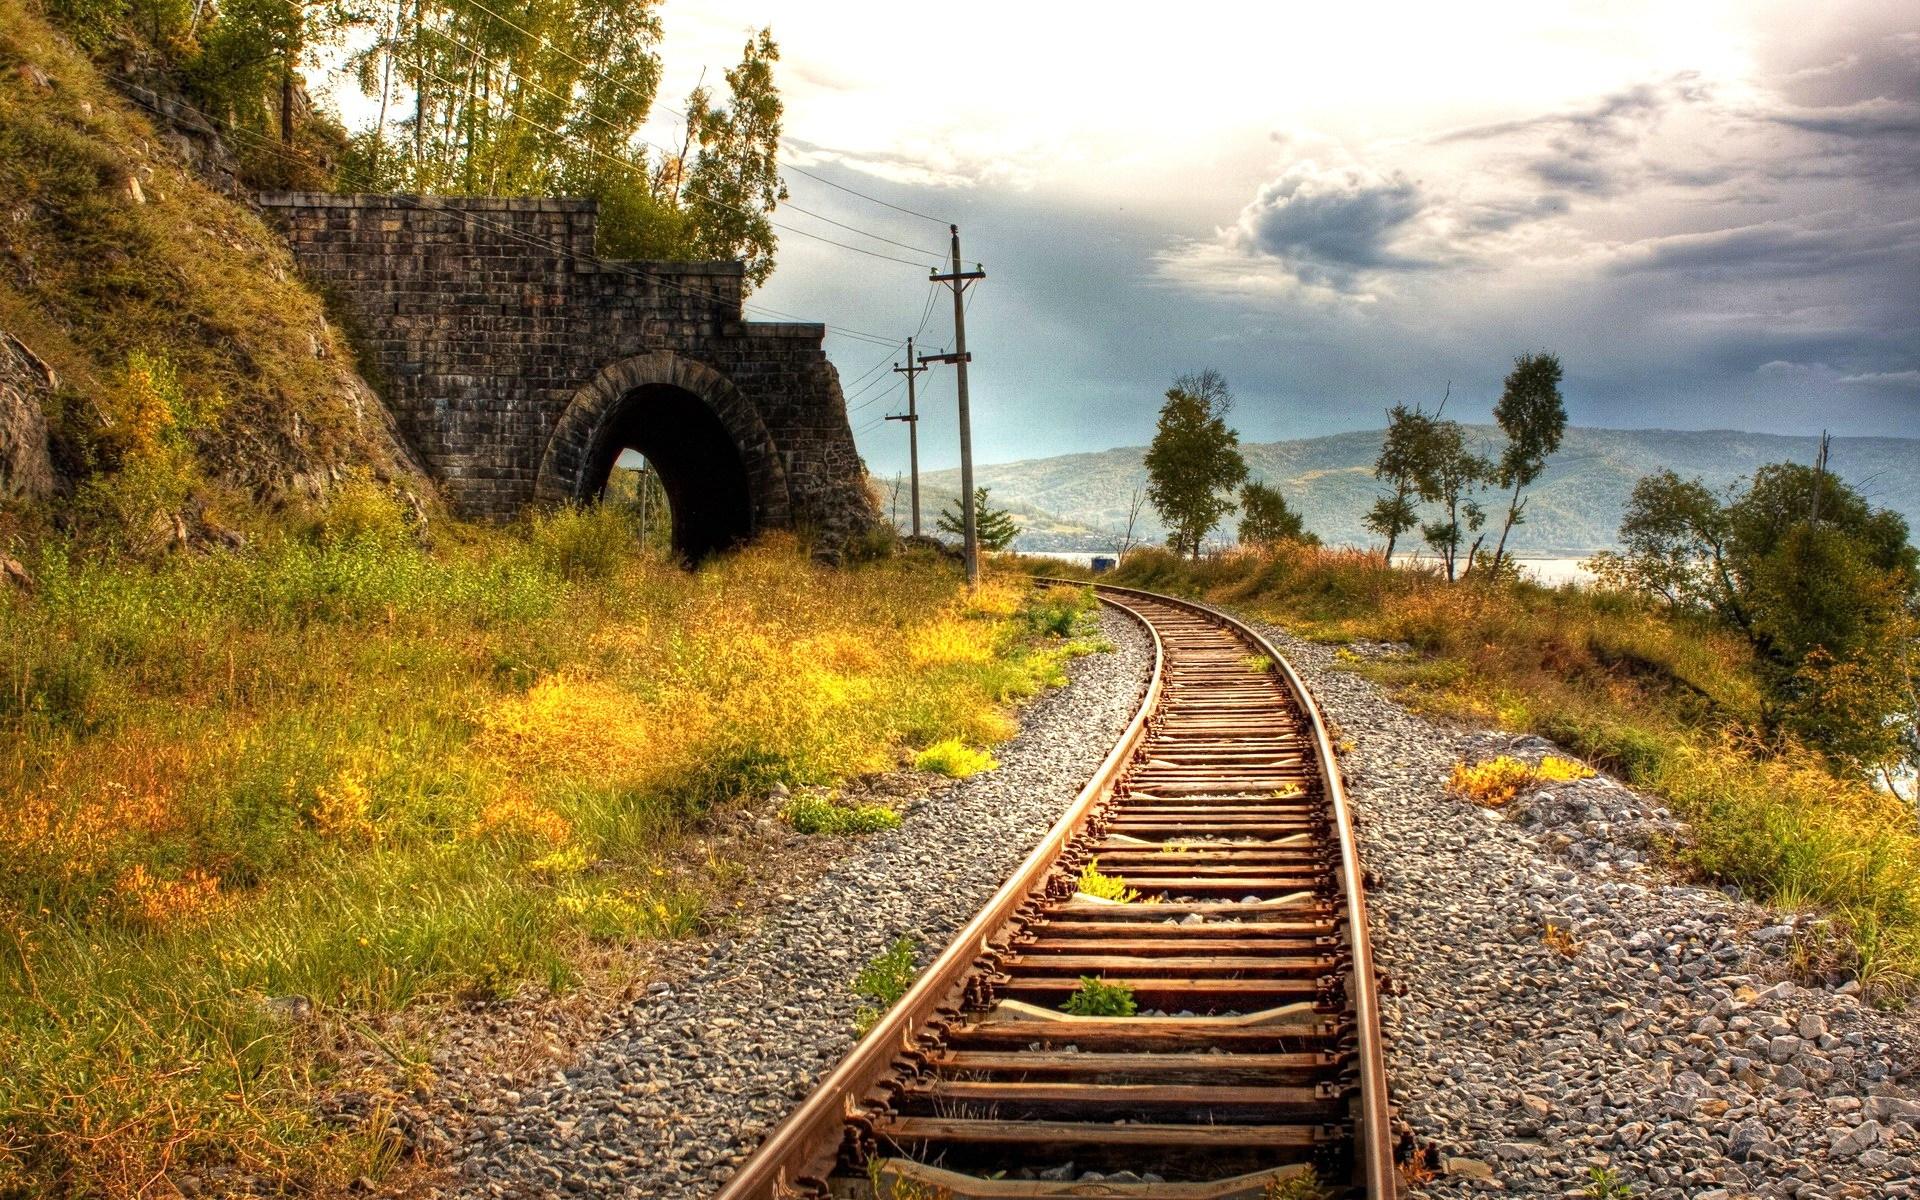 白天火车铁轨的清晰照片 · 免费素材图片